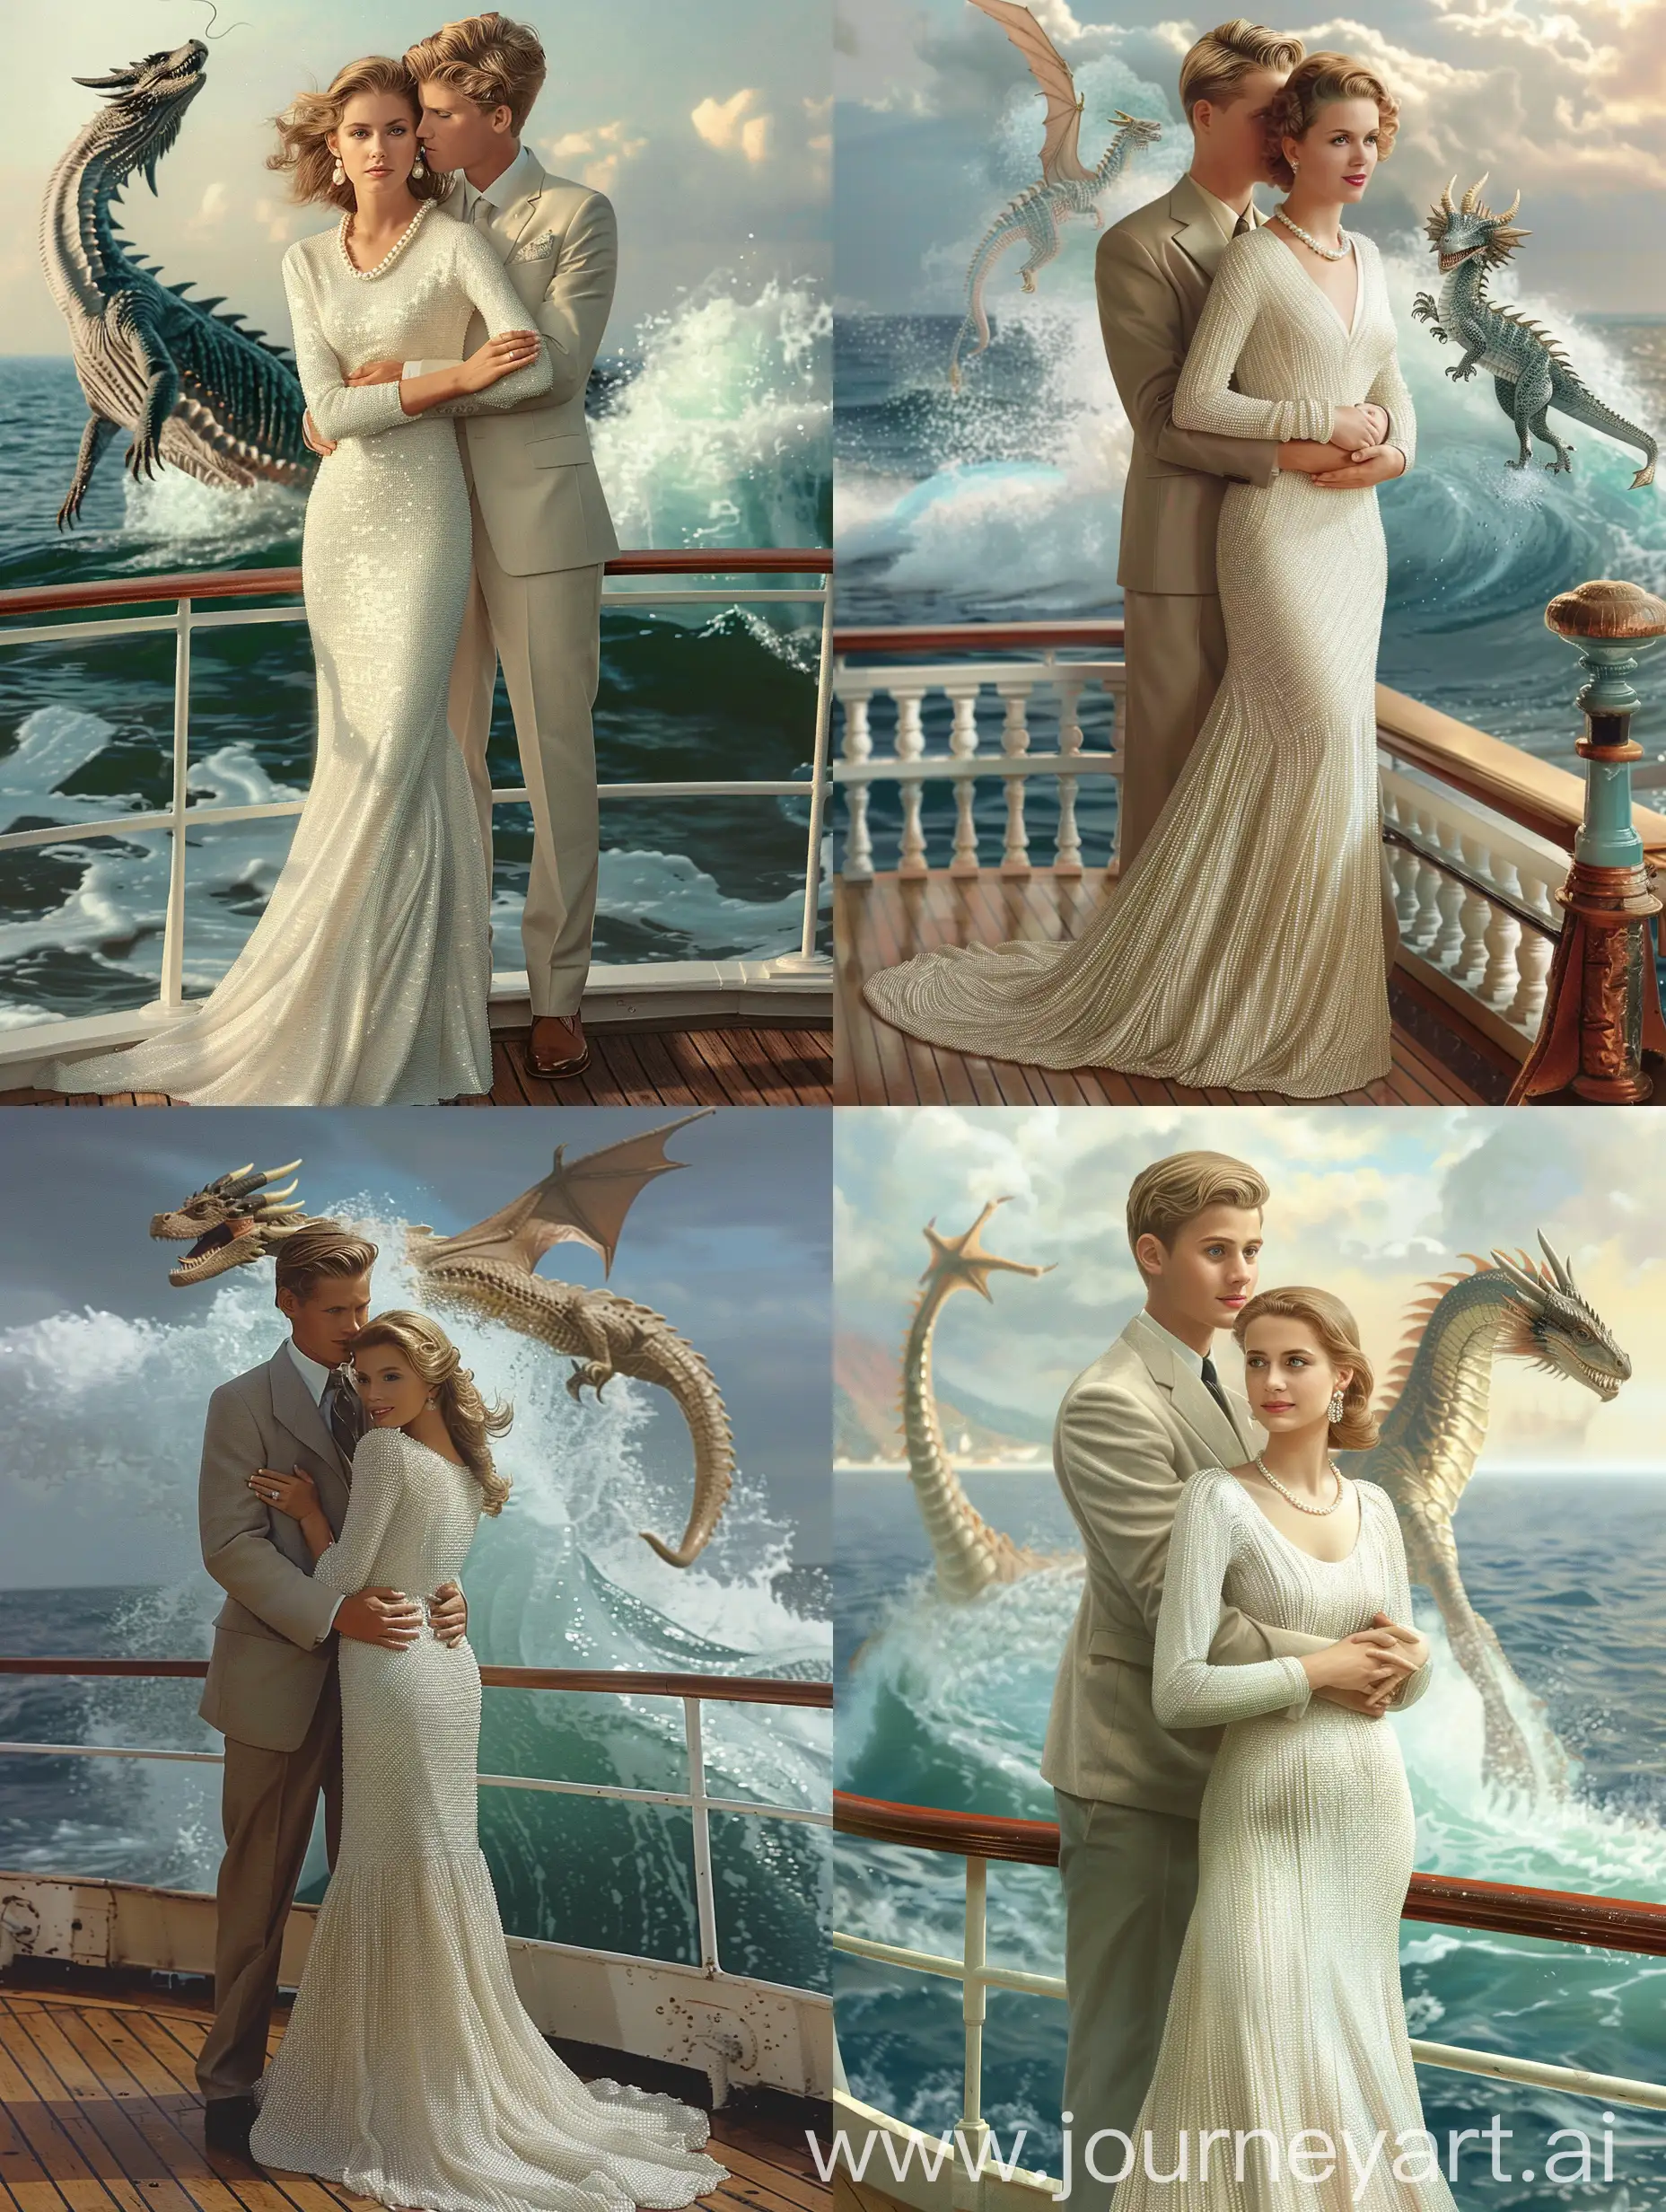 красивая женщина в белом длинном облегающем платье с жемчужинками стоит на палубе, её обнимает красивый мужчина со светлыми волосами в костюме. Позади них из воды выпрыгивает морской дракон-змей.

